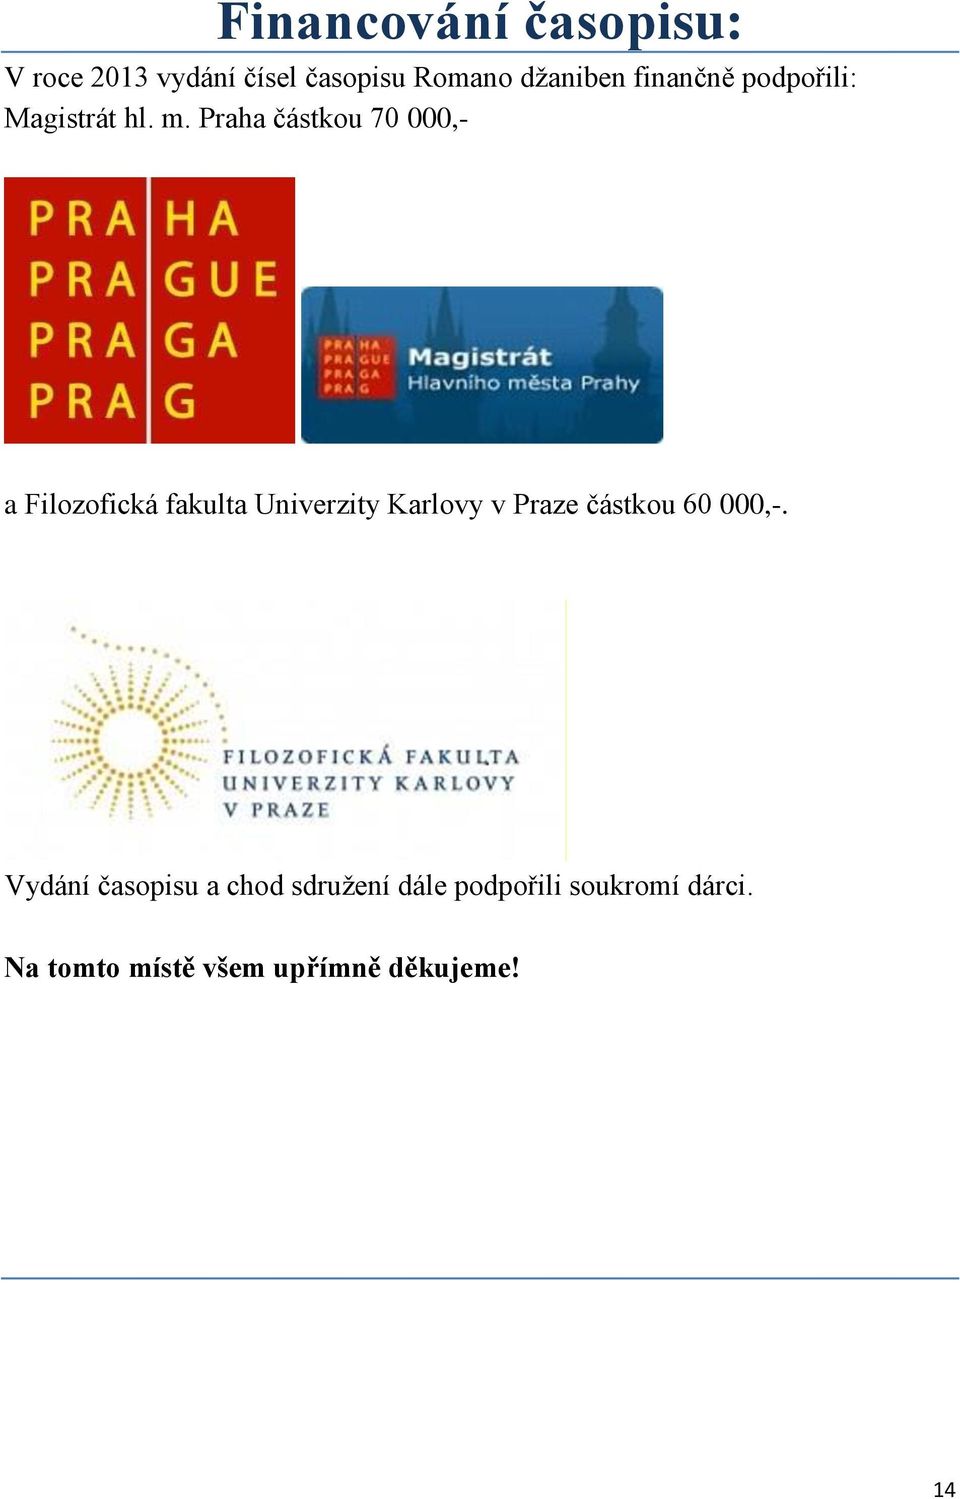 Praha částkou 70 000,- a Filozofická fakulta Univerzity Karlovy v Praze